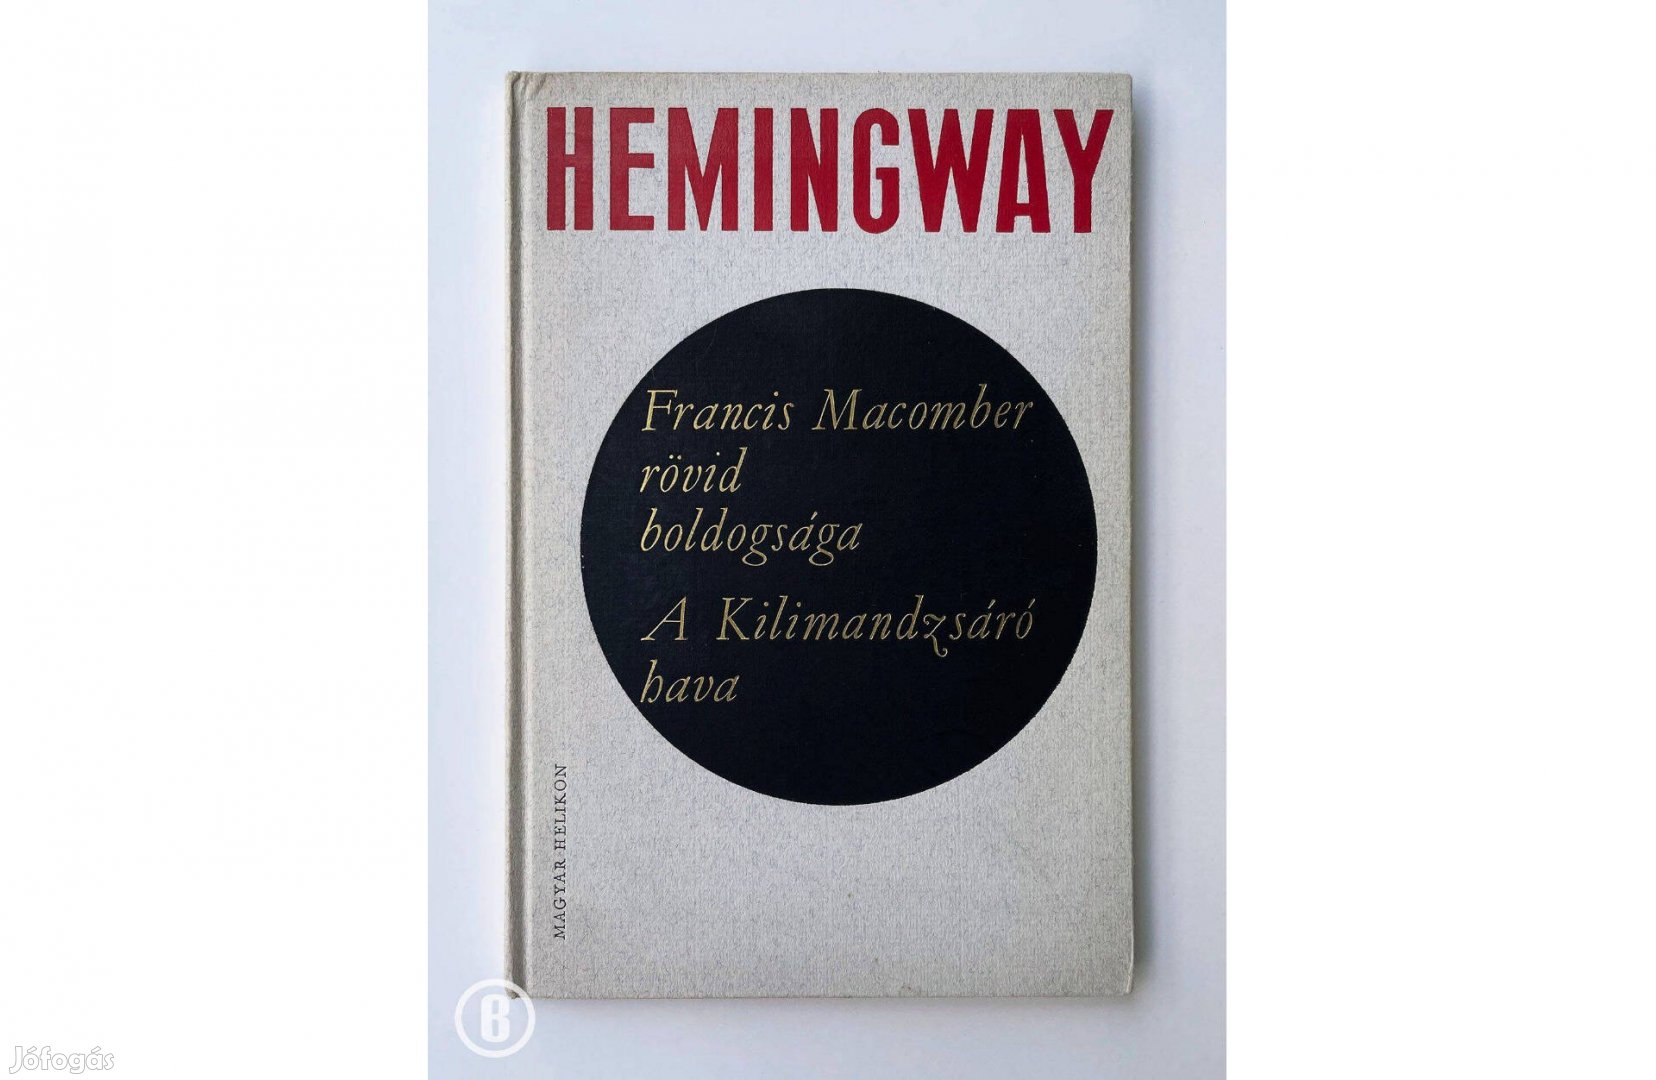 Hemingway: Francis Macomber rövid boldogsága / A Kilimandzsáró hava